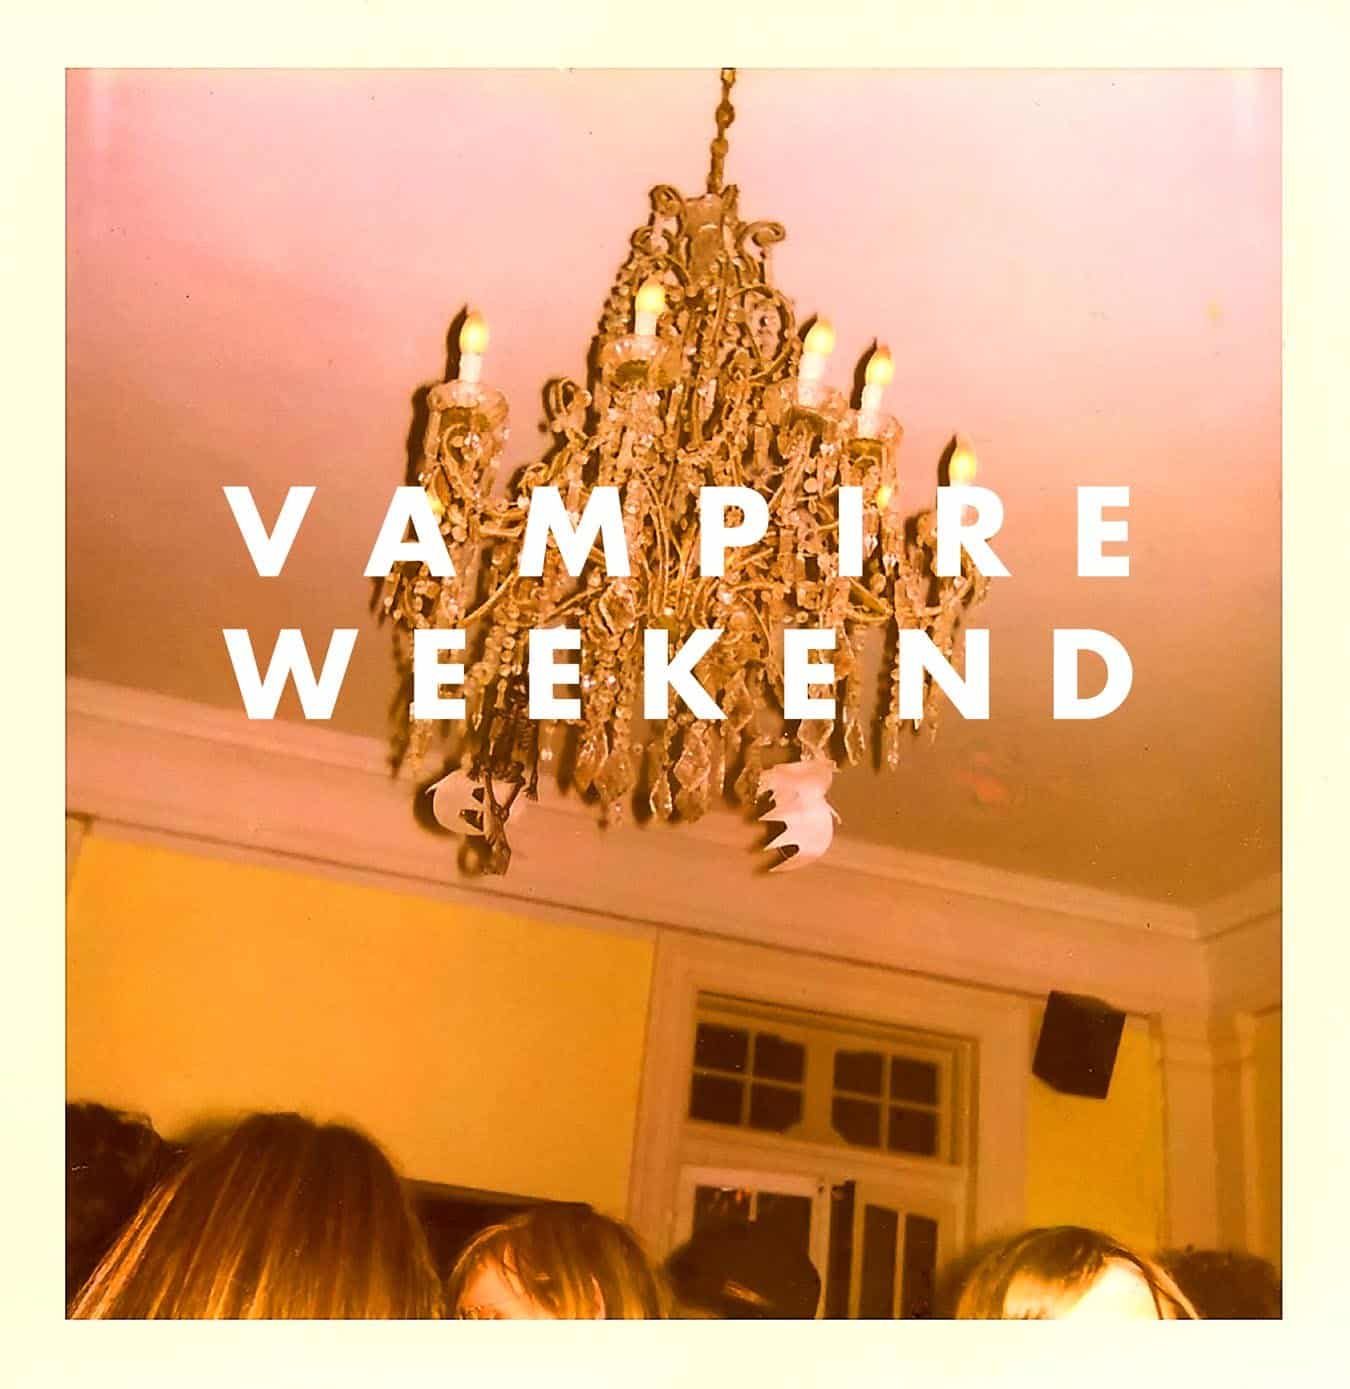 Vampire-Weekend-Vampire-Weekend-vinyl-LP-record-album-front